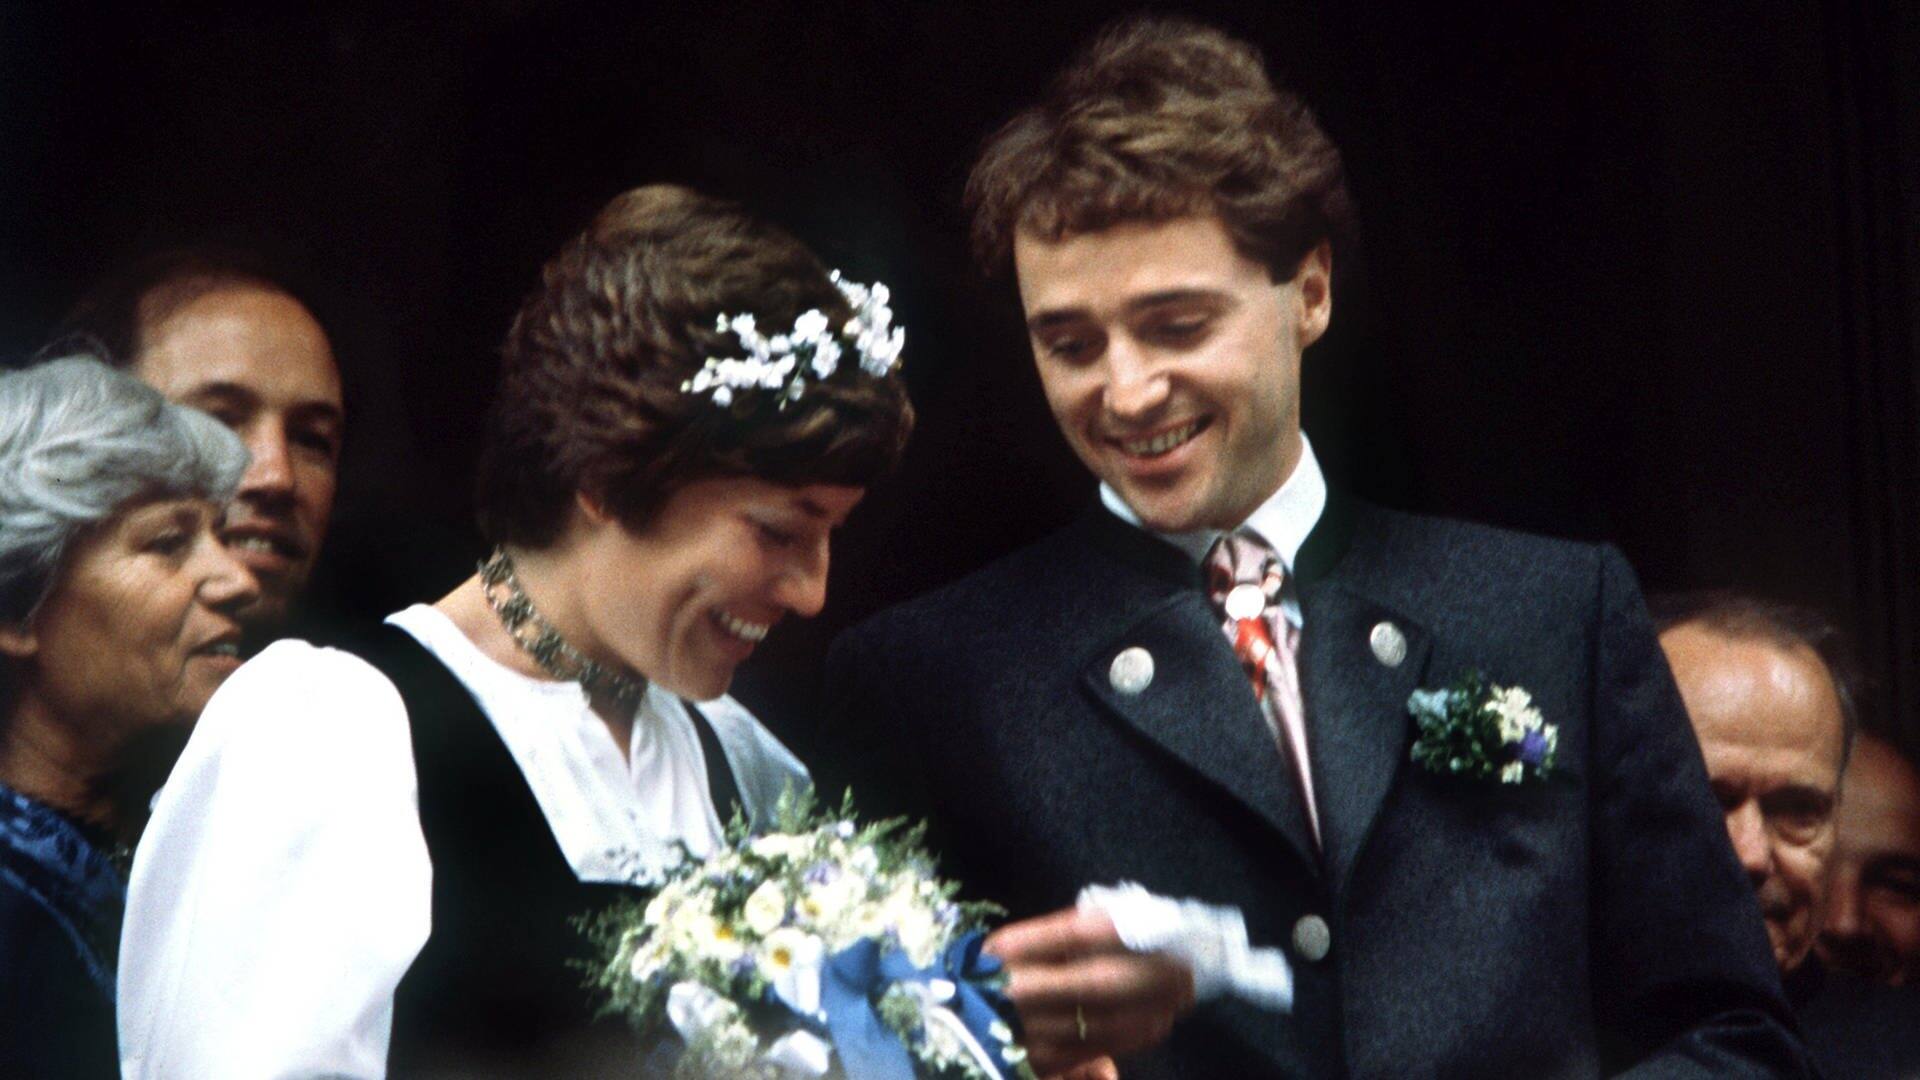 Rosi Mittermaier, bei ihrer Hochzeit mit dem Skirennläufer Christian Neureuther am 7.6.1980 in Garmisch-Partenkirchen. (Foto: IMAGO, picture-alliance / dpa | Heinz-Jürgen Göttert)